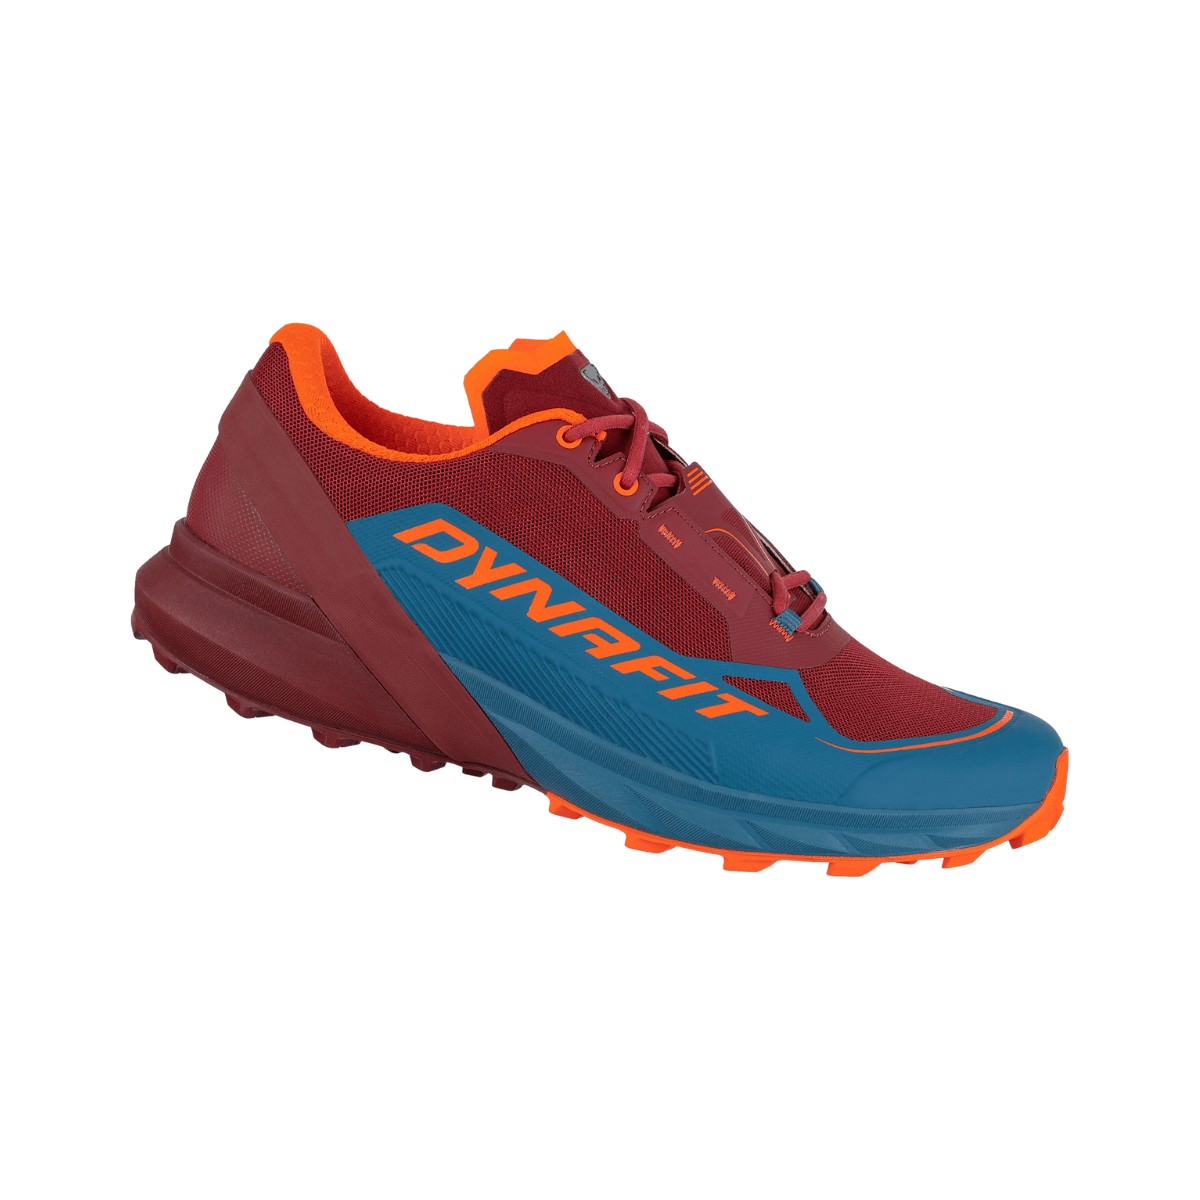 Schuhe Dynafit Ultra 50 Blau Rot AW22, Größe 41 - EUR